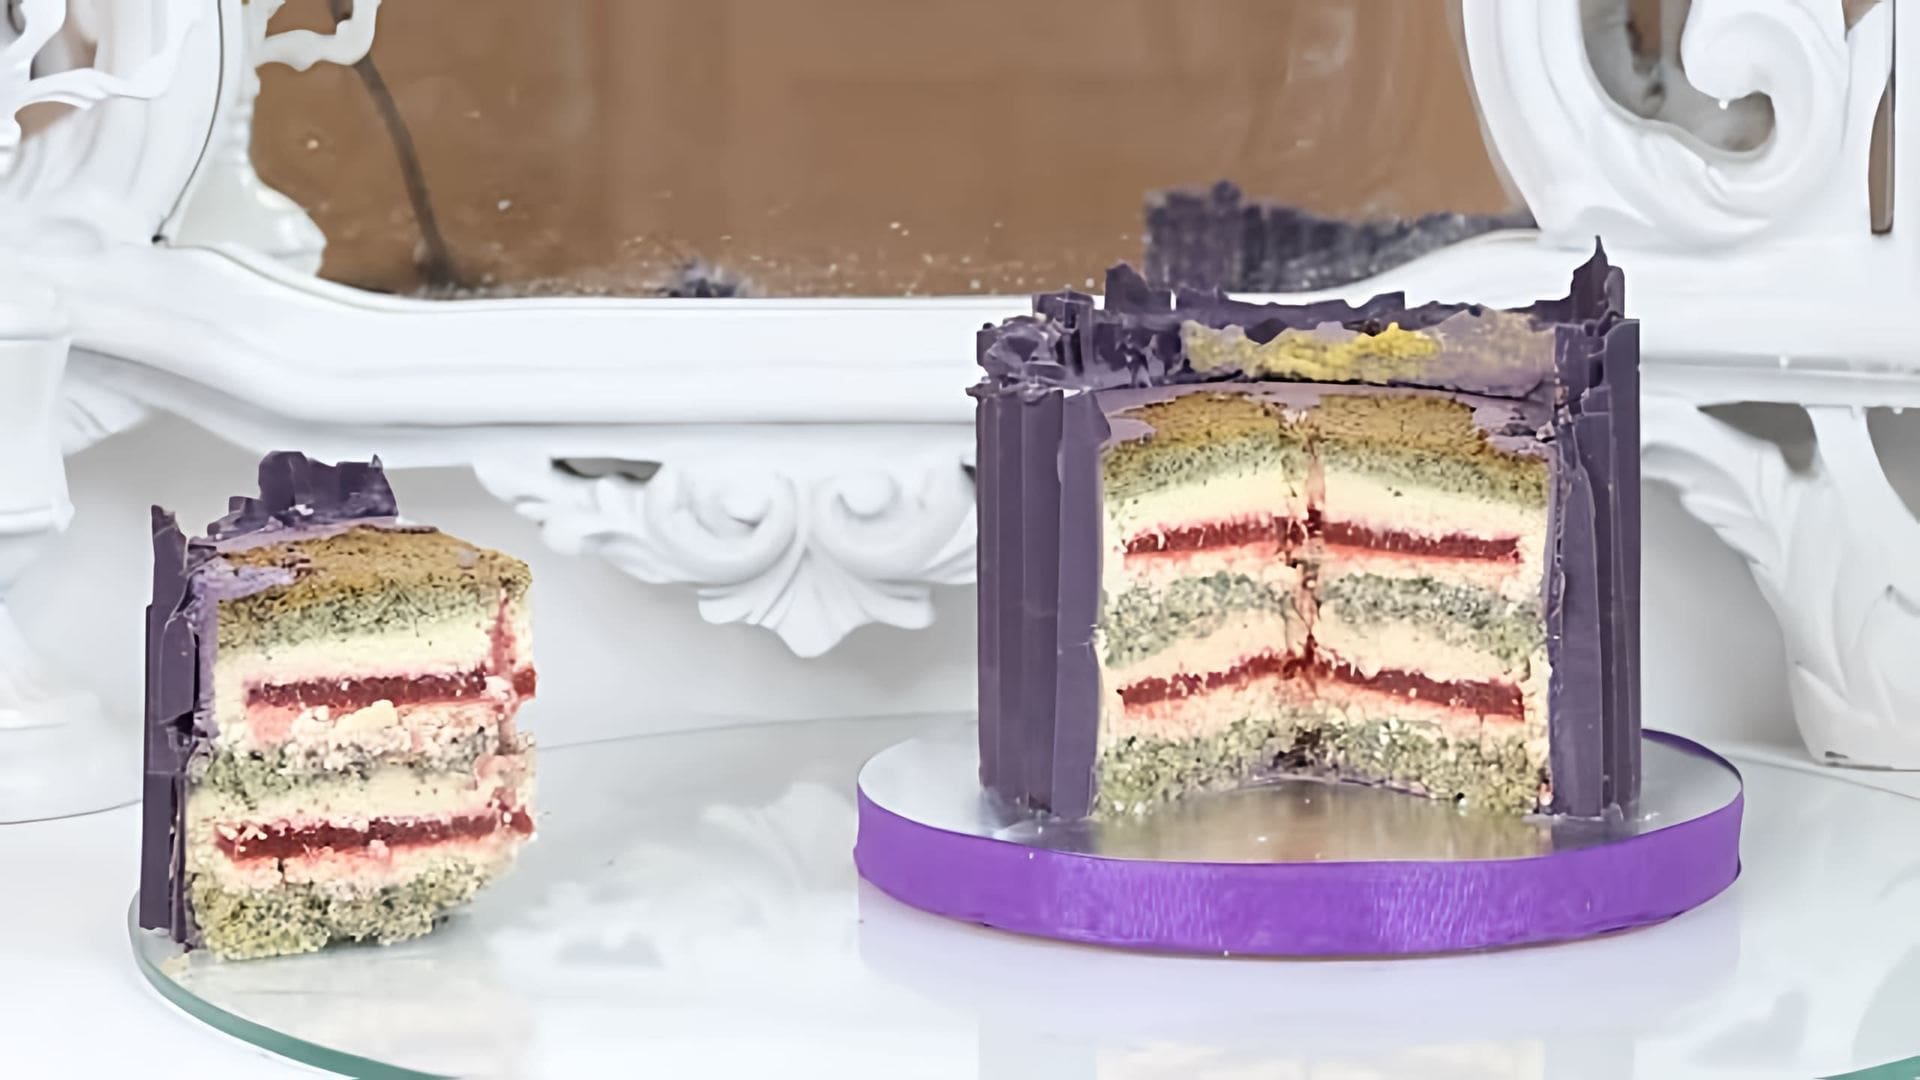 В этом видео демонстрируется рецепт приготовления торта с интересным сочетанием бисквита и двух начинок